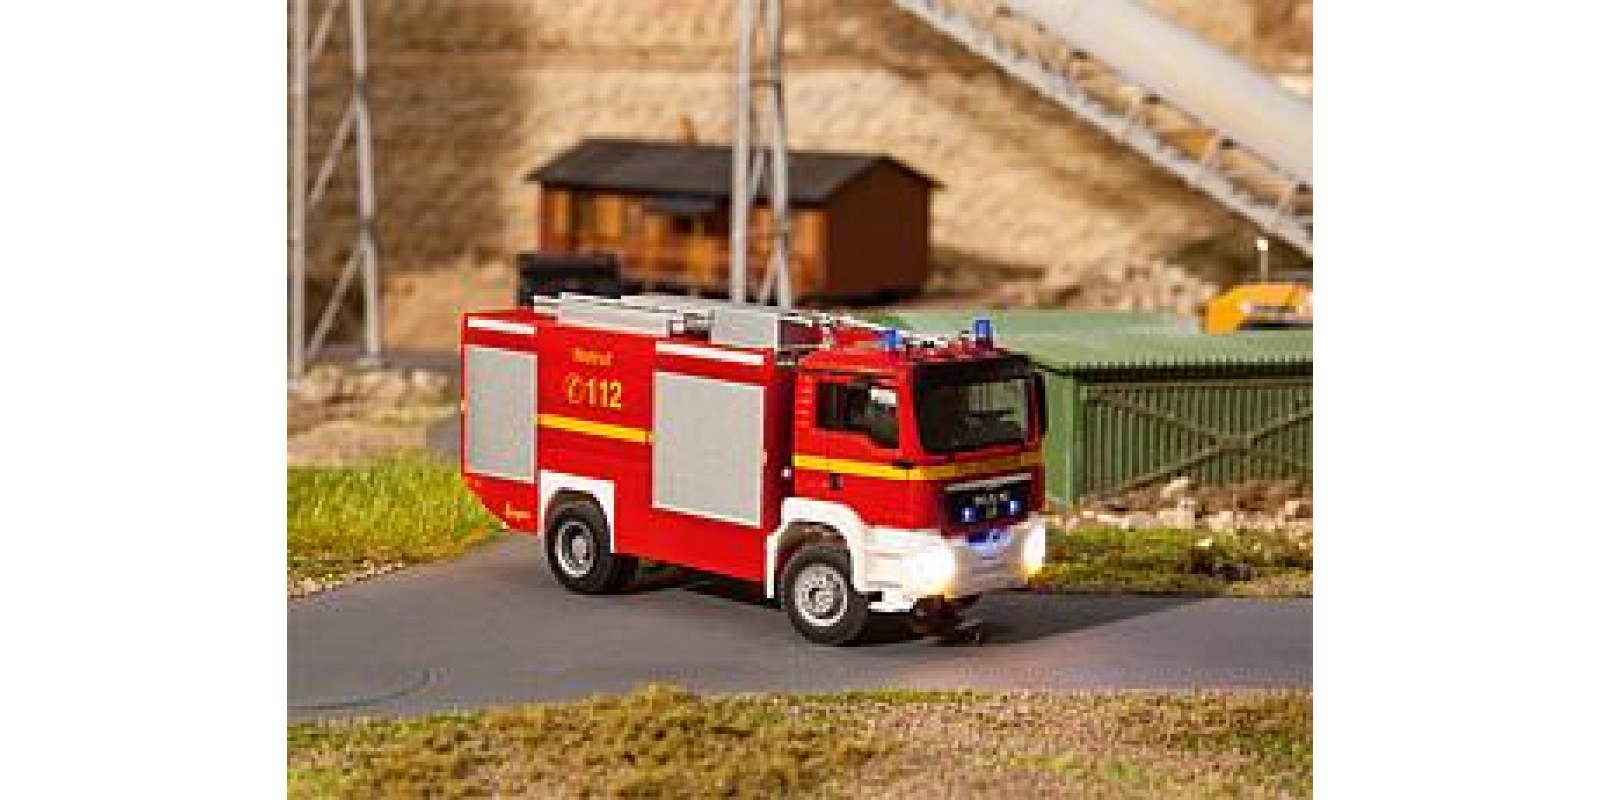 FA161306  Car System Digital 3.0, MAN TGS TLF Fire engine (HERPA)